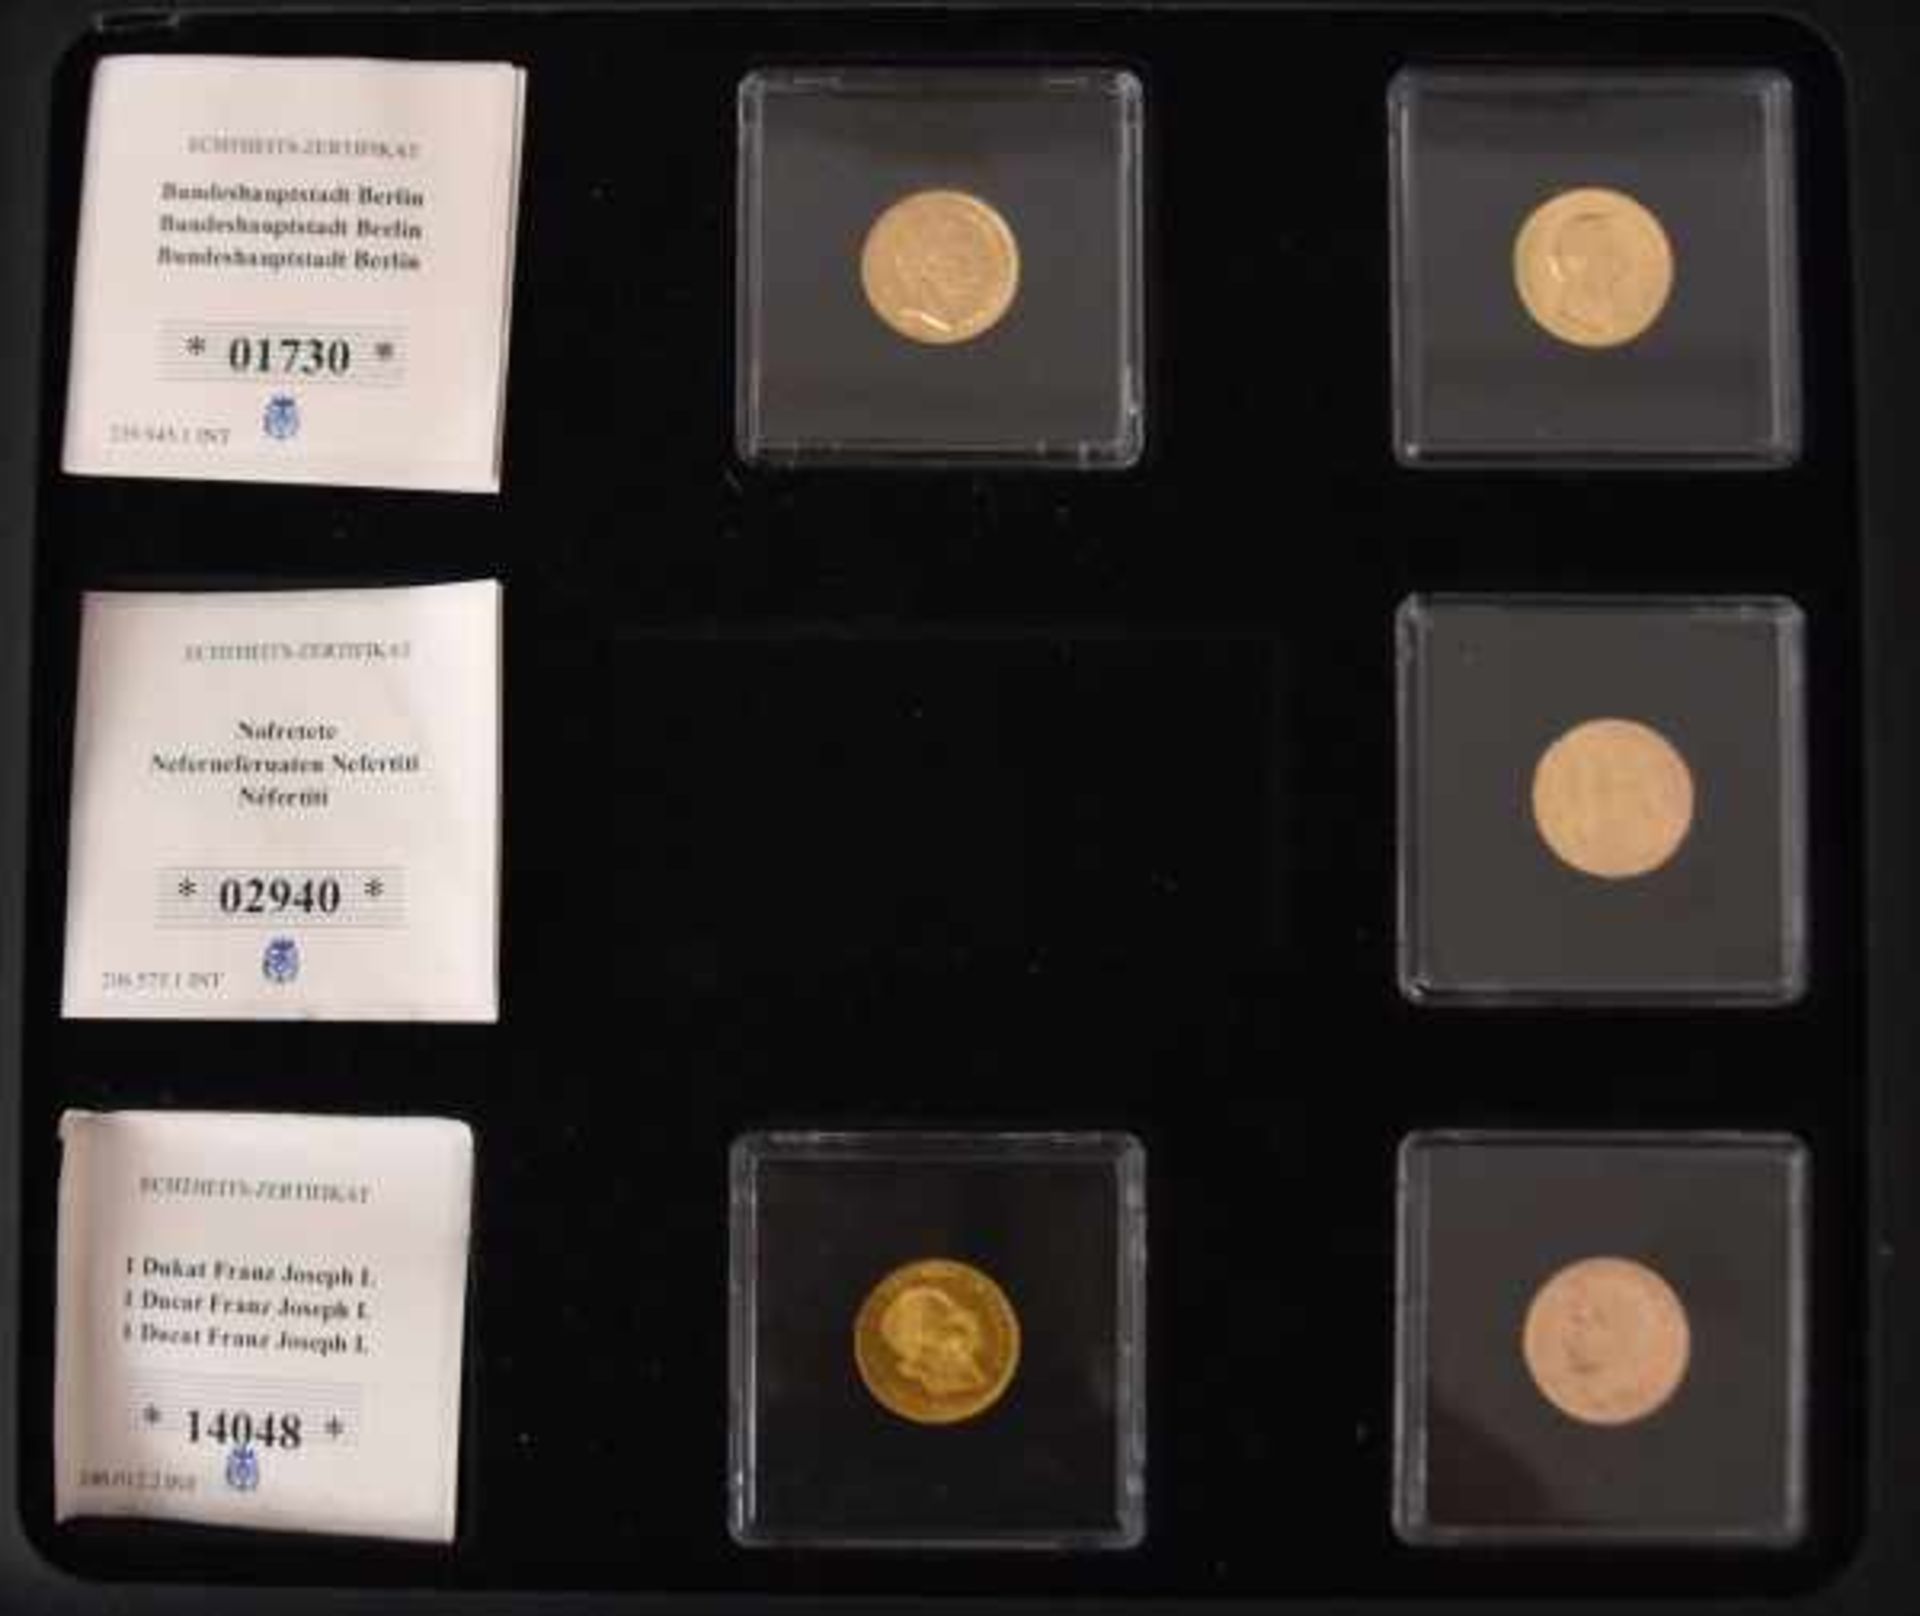 5 GOLDMÜNZEN Kaiserreich, Neuprägung, je 10 Goldmark (5 aus einem Set), Gold 900/1000, je 3,98gr, - Bild 2 aus 4